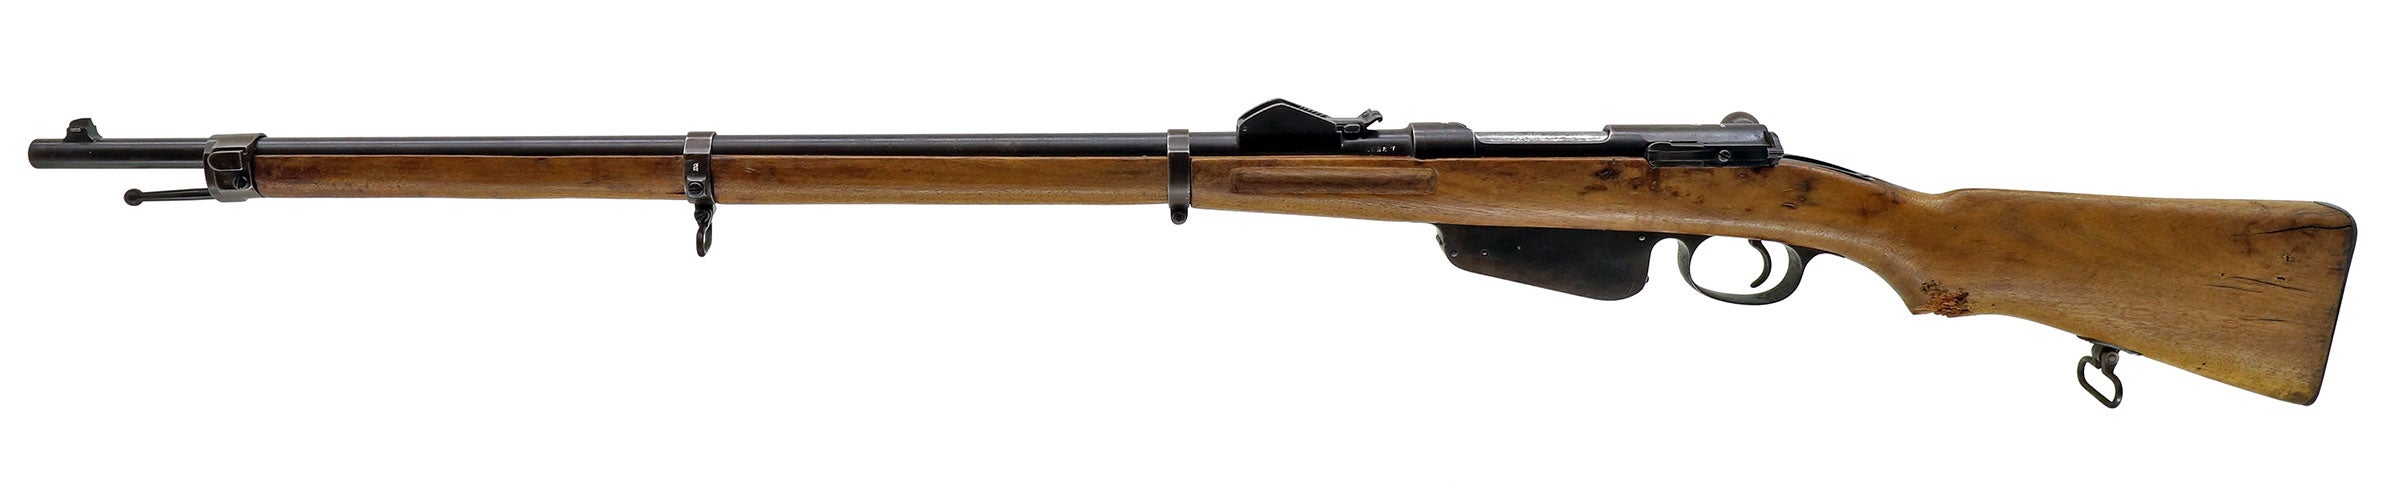 Siamese Mannlicher M.1888 in 8x50R Siam | Gunboards Forums